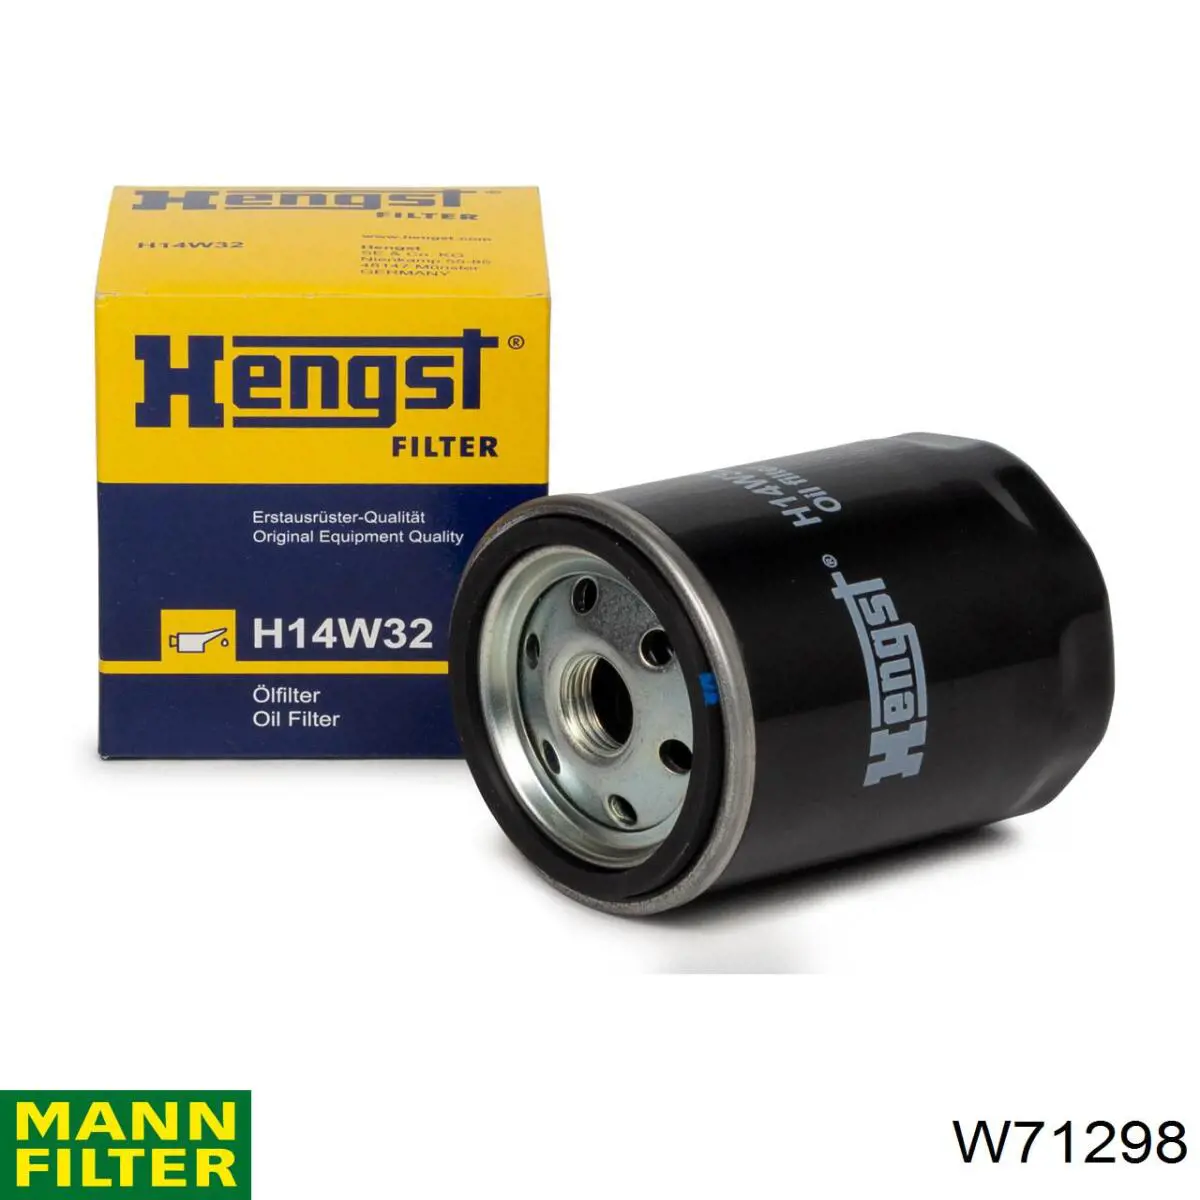 W71298 Mann-Filter filtro de aceite